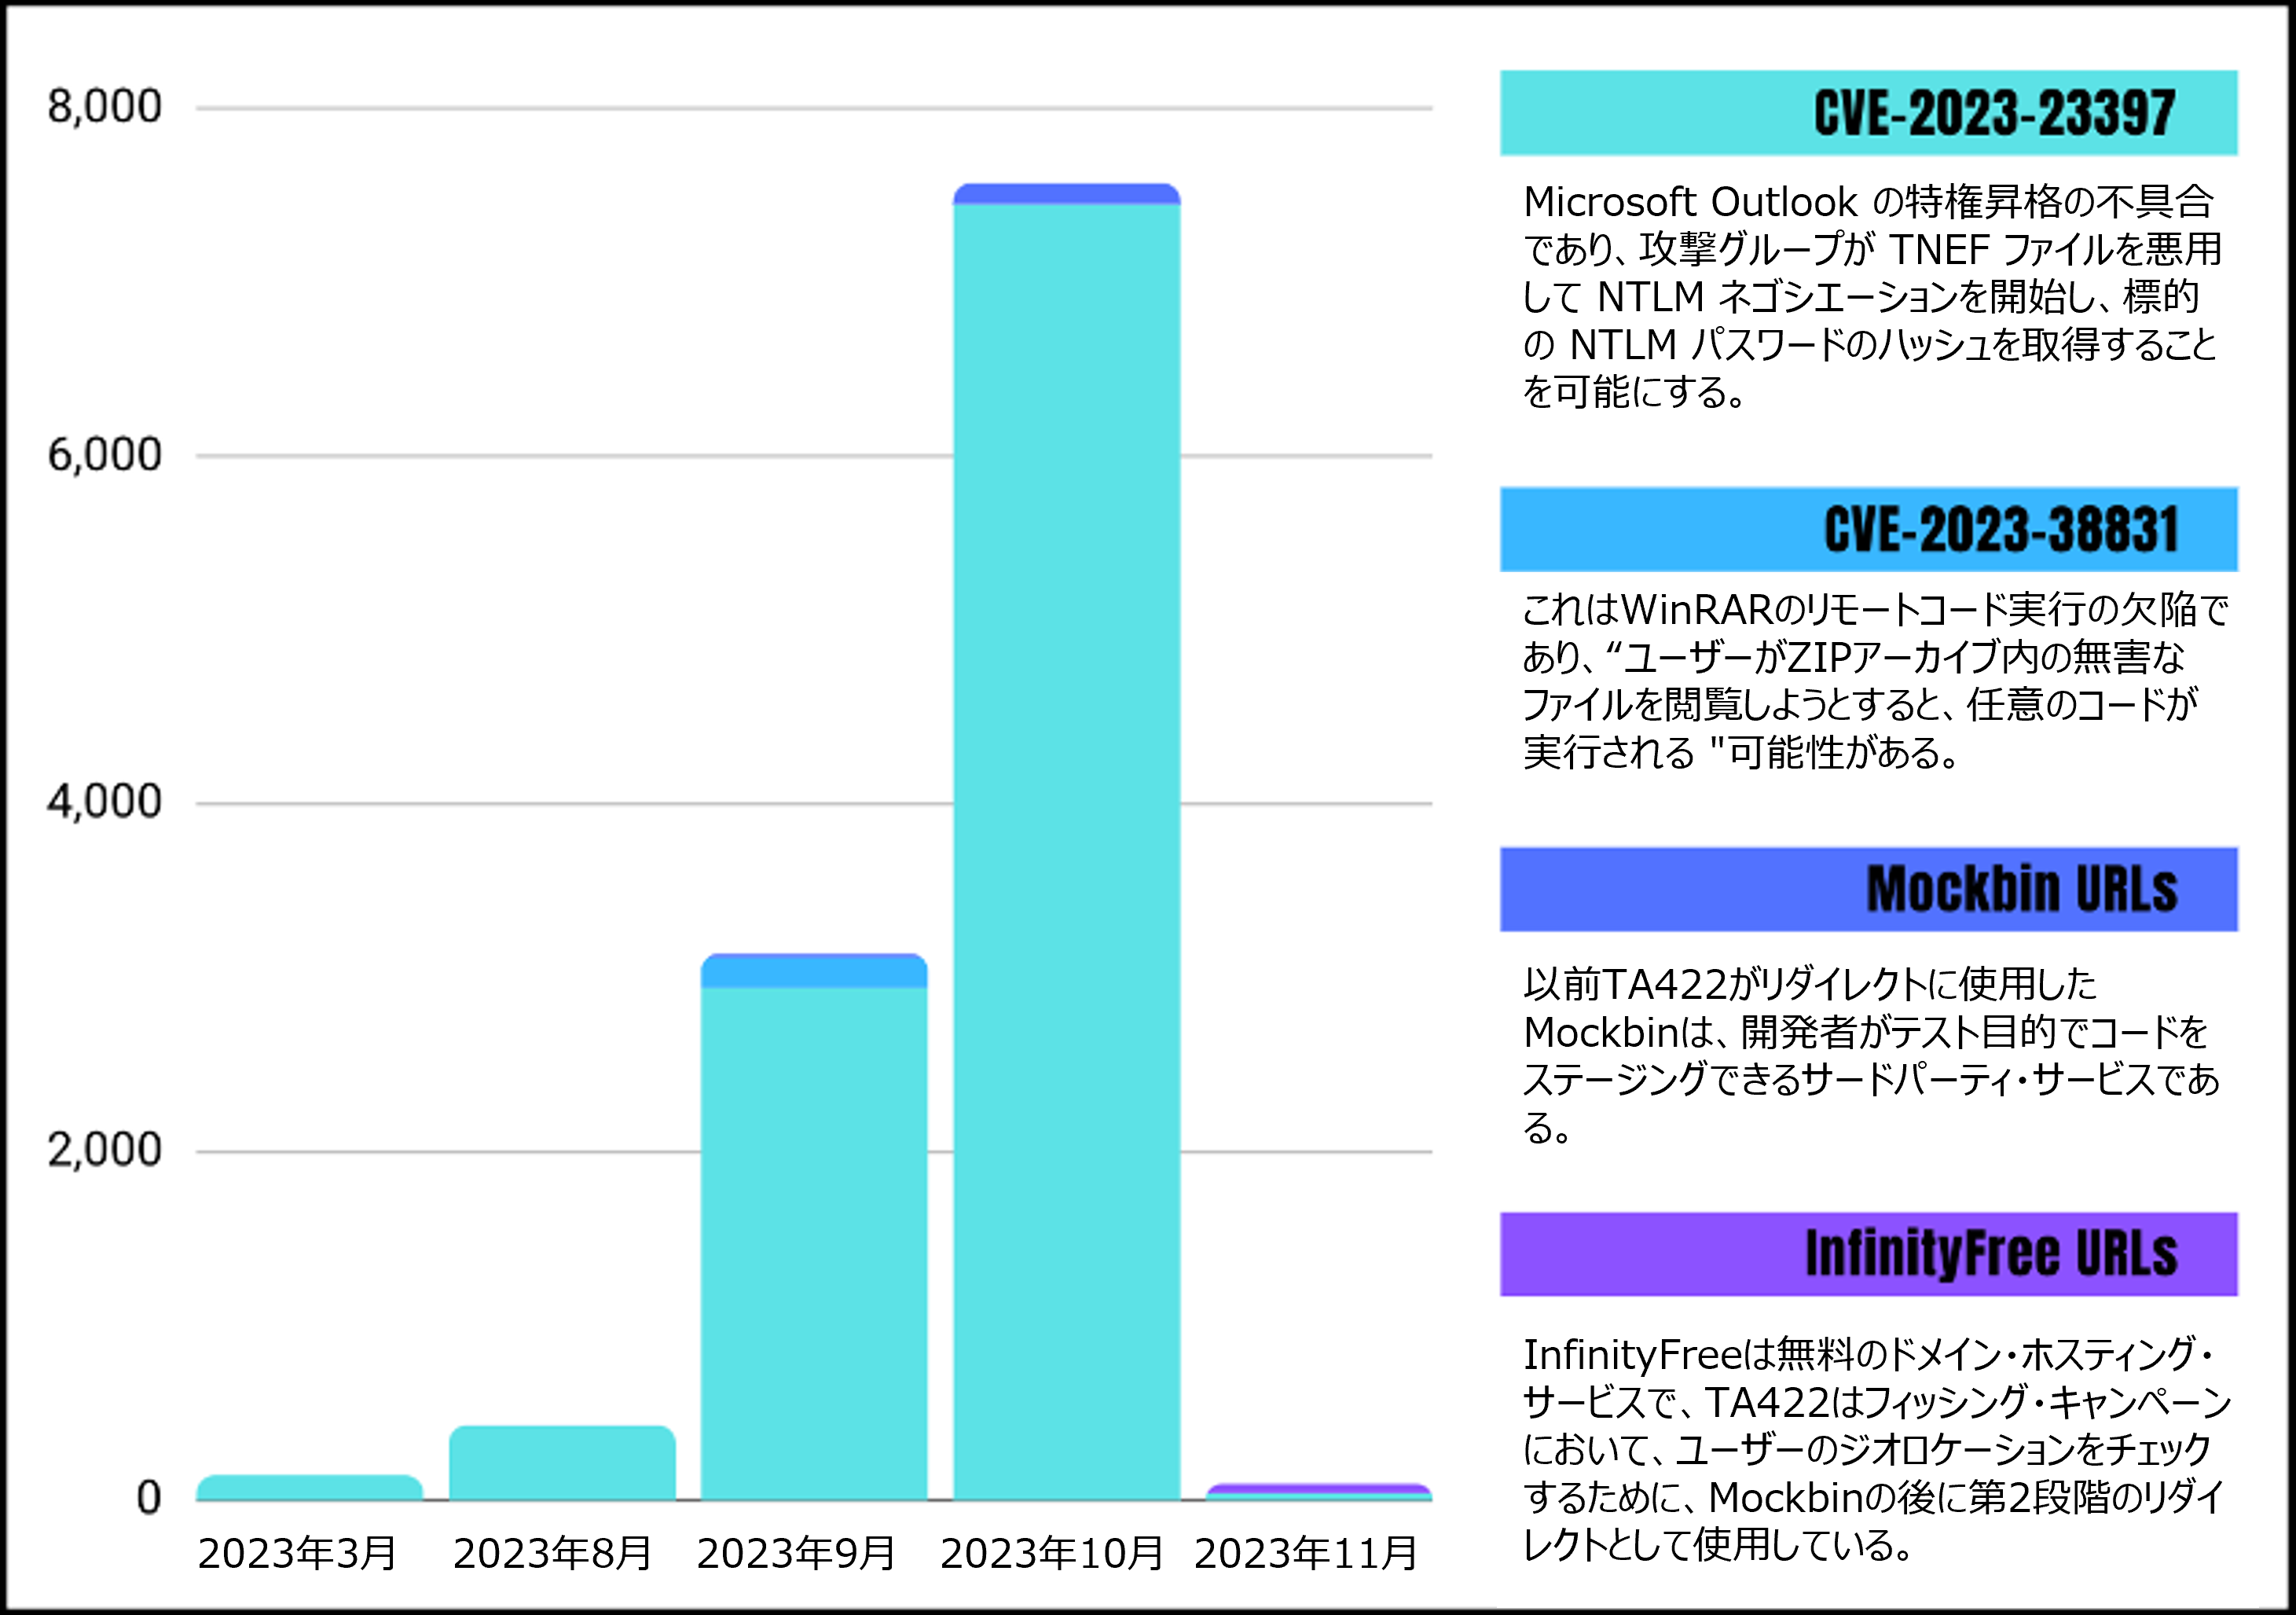 2023年3月から2023年11月までのTA422フィッシング活動の内訳を示すグラフ